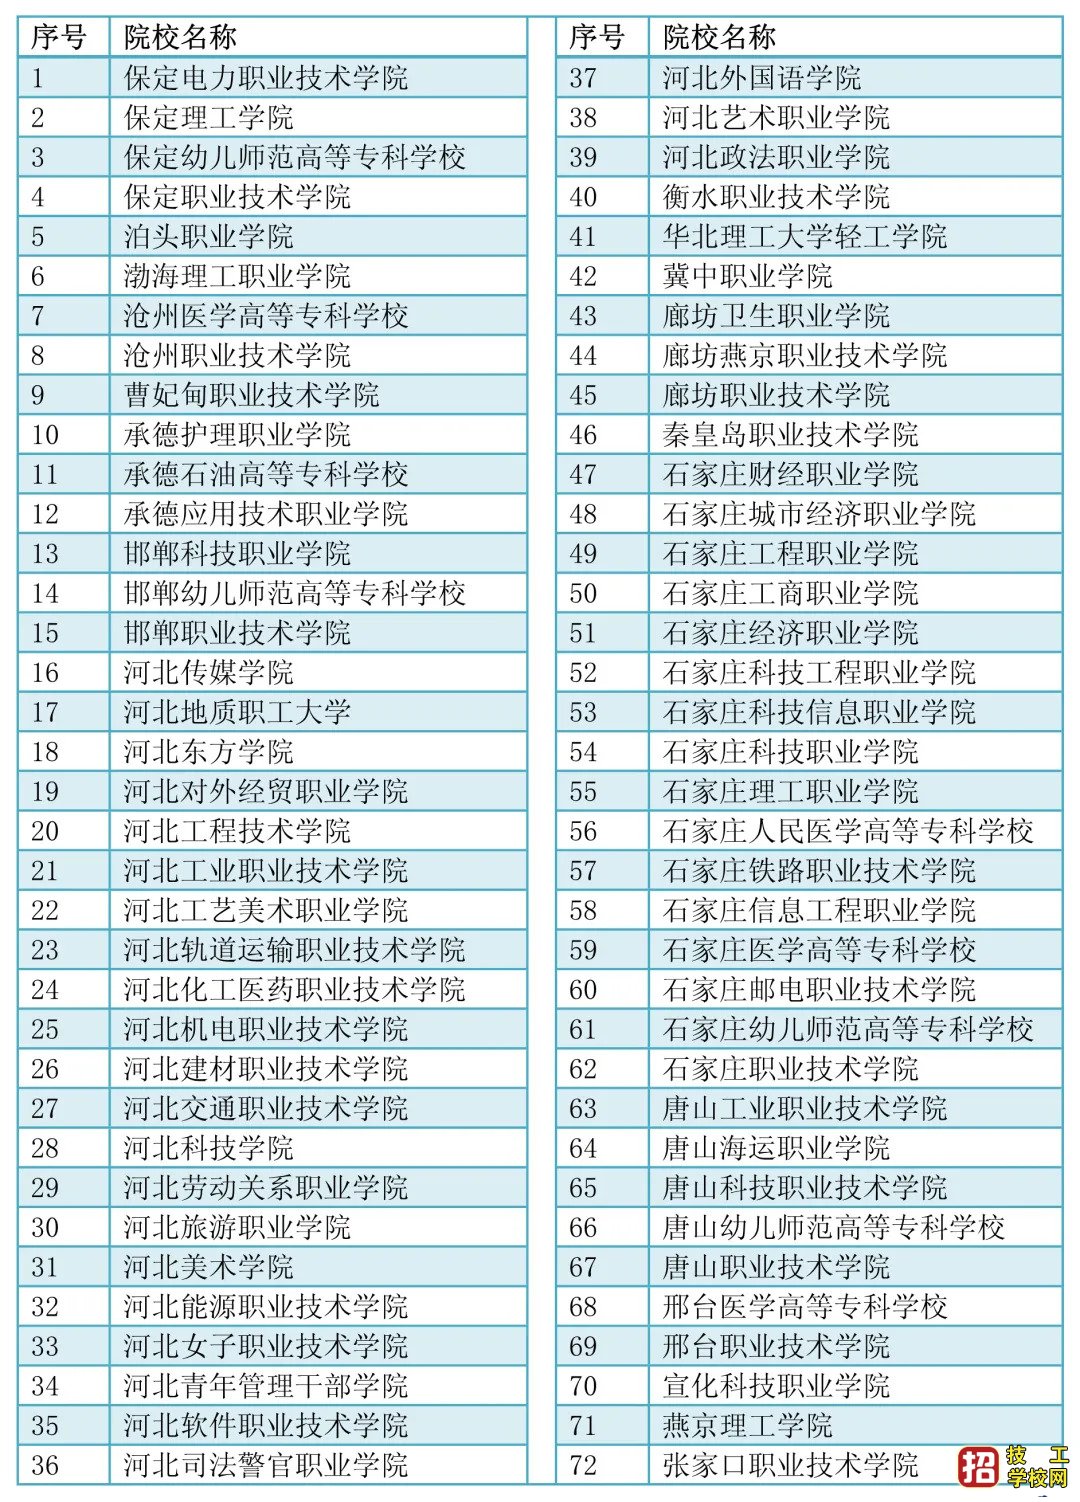 2021年河北单招学校名单(72所)